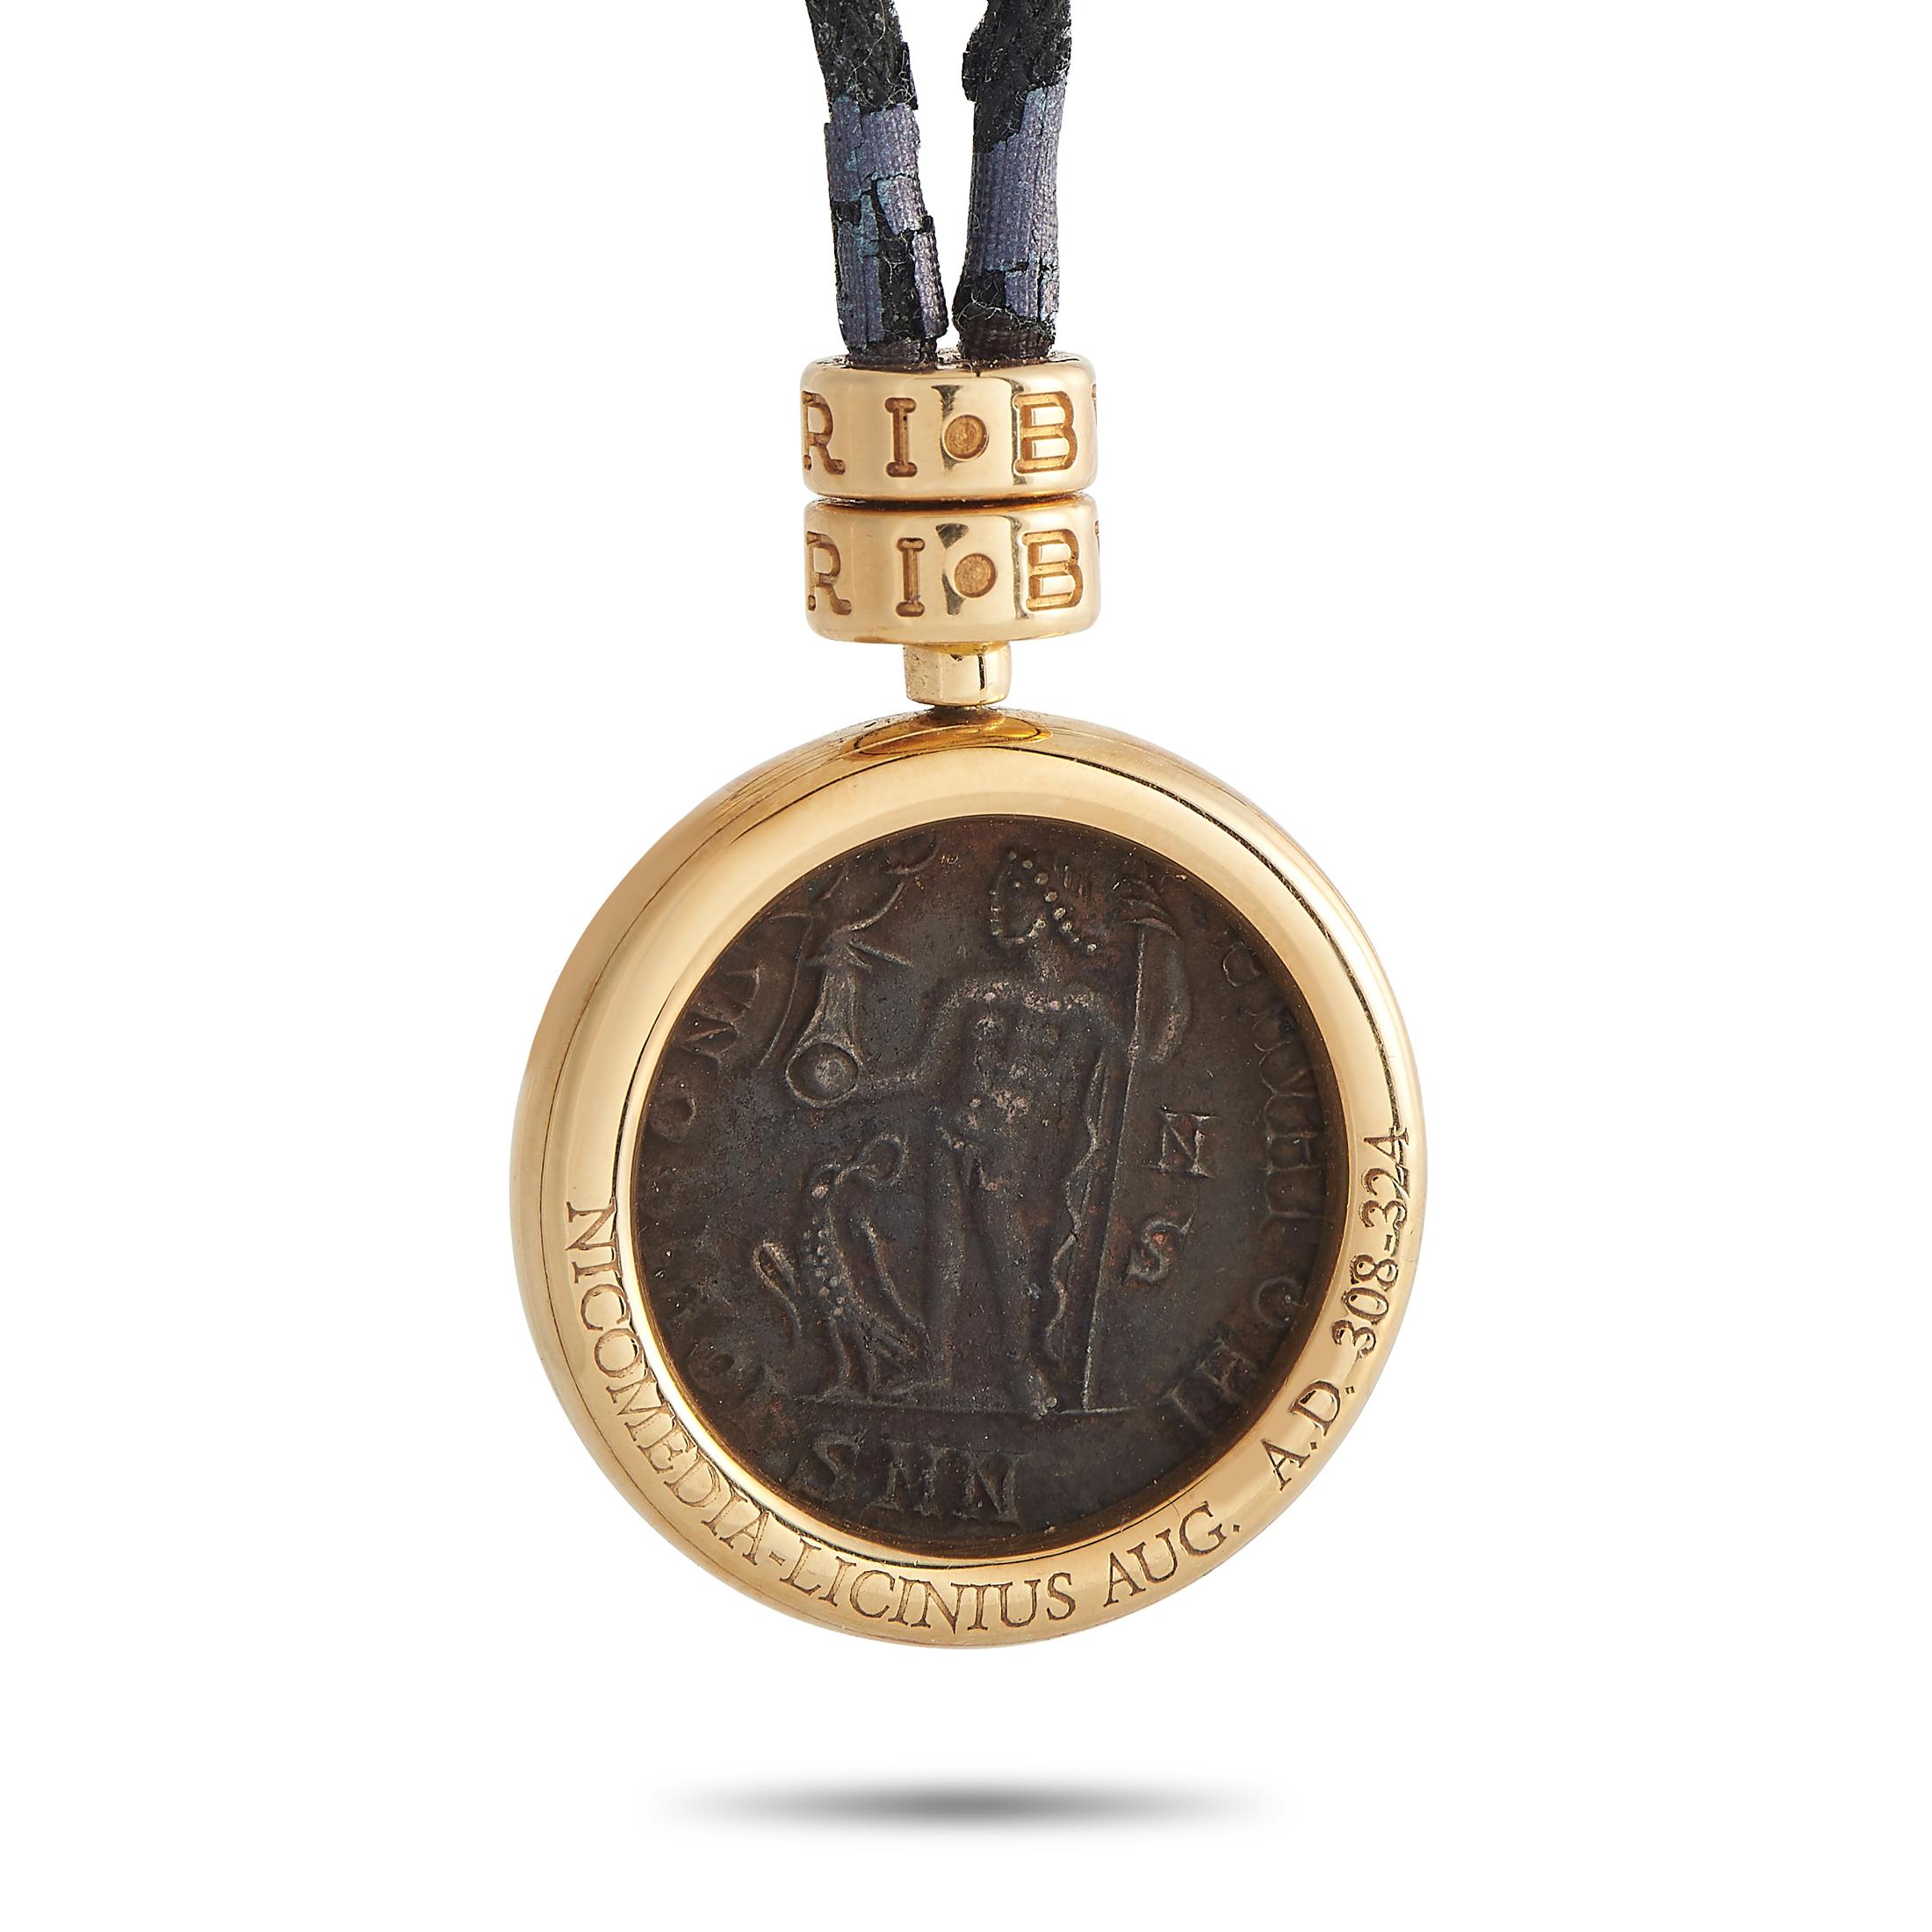 Diese Halskette des italienischen Luxusmodehauses Bvlgari ist eine Hommage an Rom und seine Geschichte und Traditionen. Er trägt eine antike Münze in einem runden Rahmen aus 18 Karat Gelbgold. Der Bügel und der Verschluss der schwarzen Kordelkette